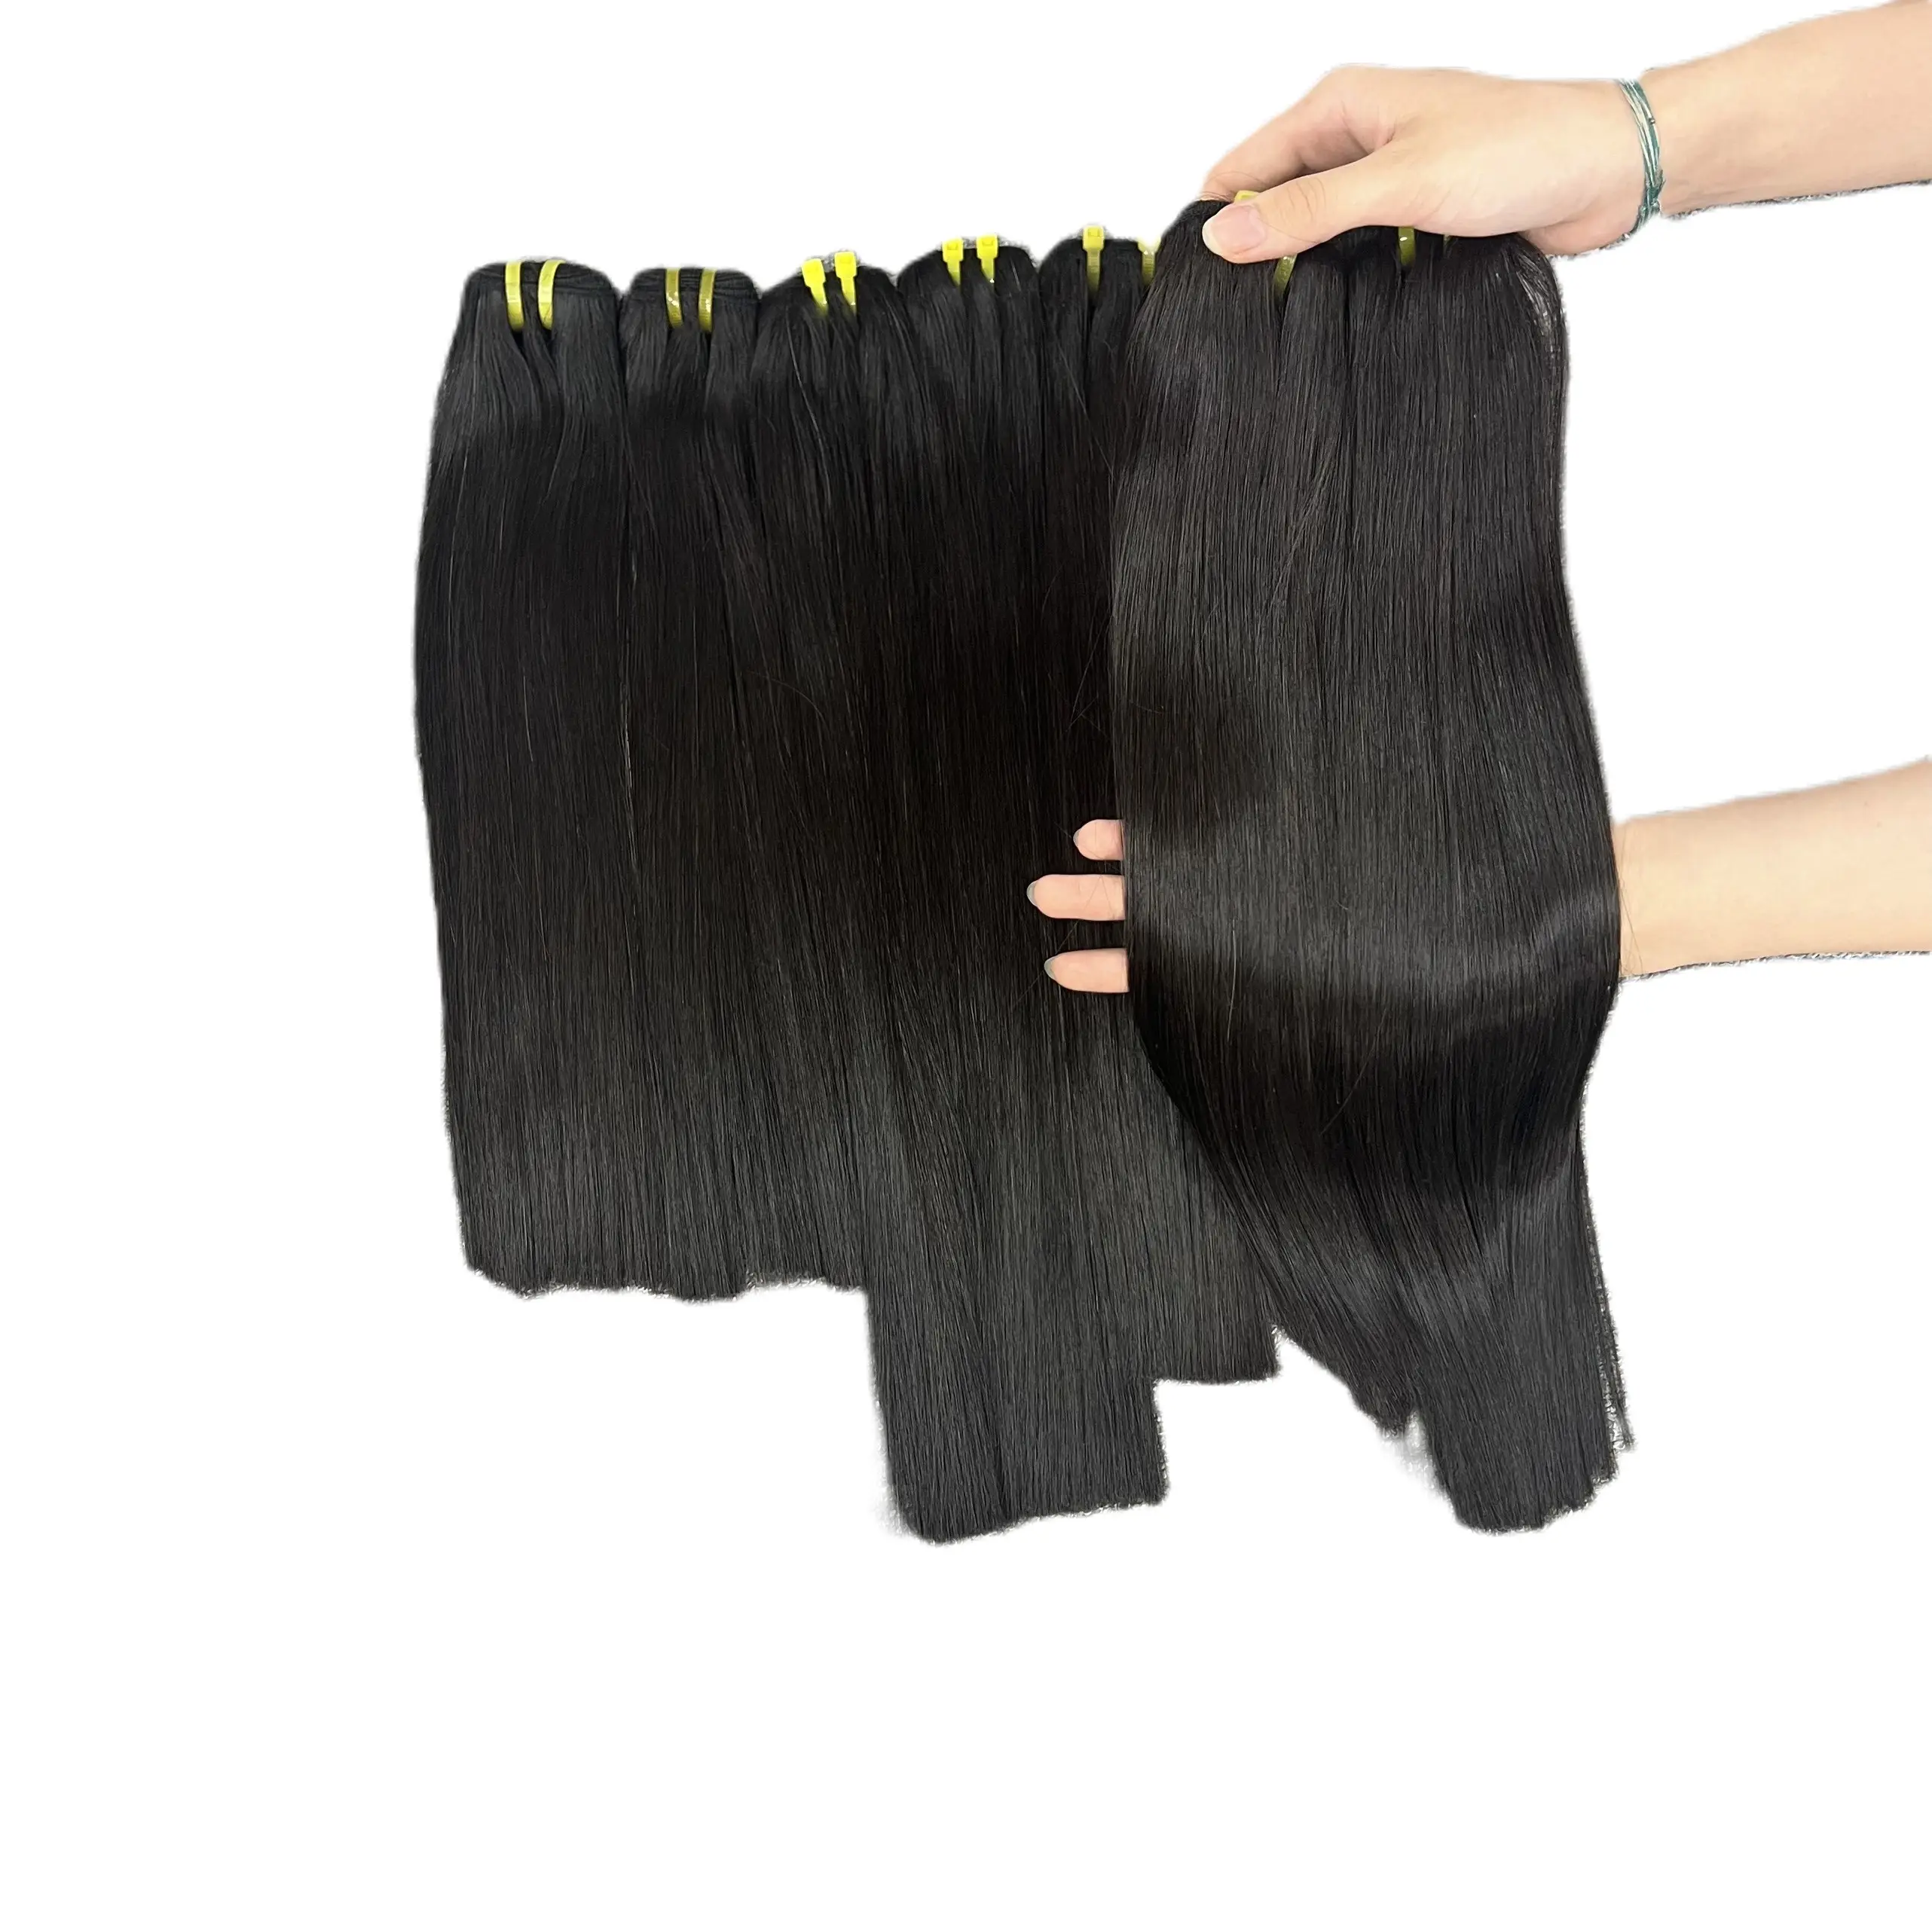 Лидер продаж: прямые волосы с костями-оптовая продажа, необработанные волосы, большой запас 100% человеческих волос из Вьетнама